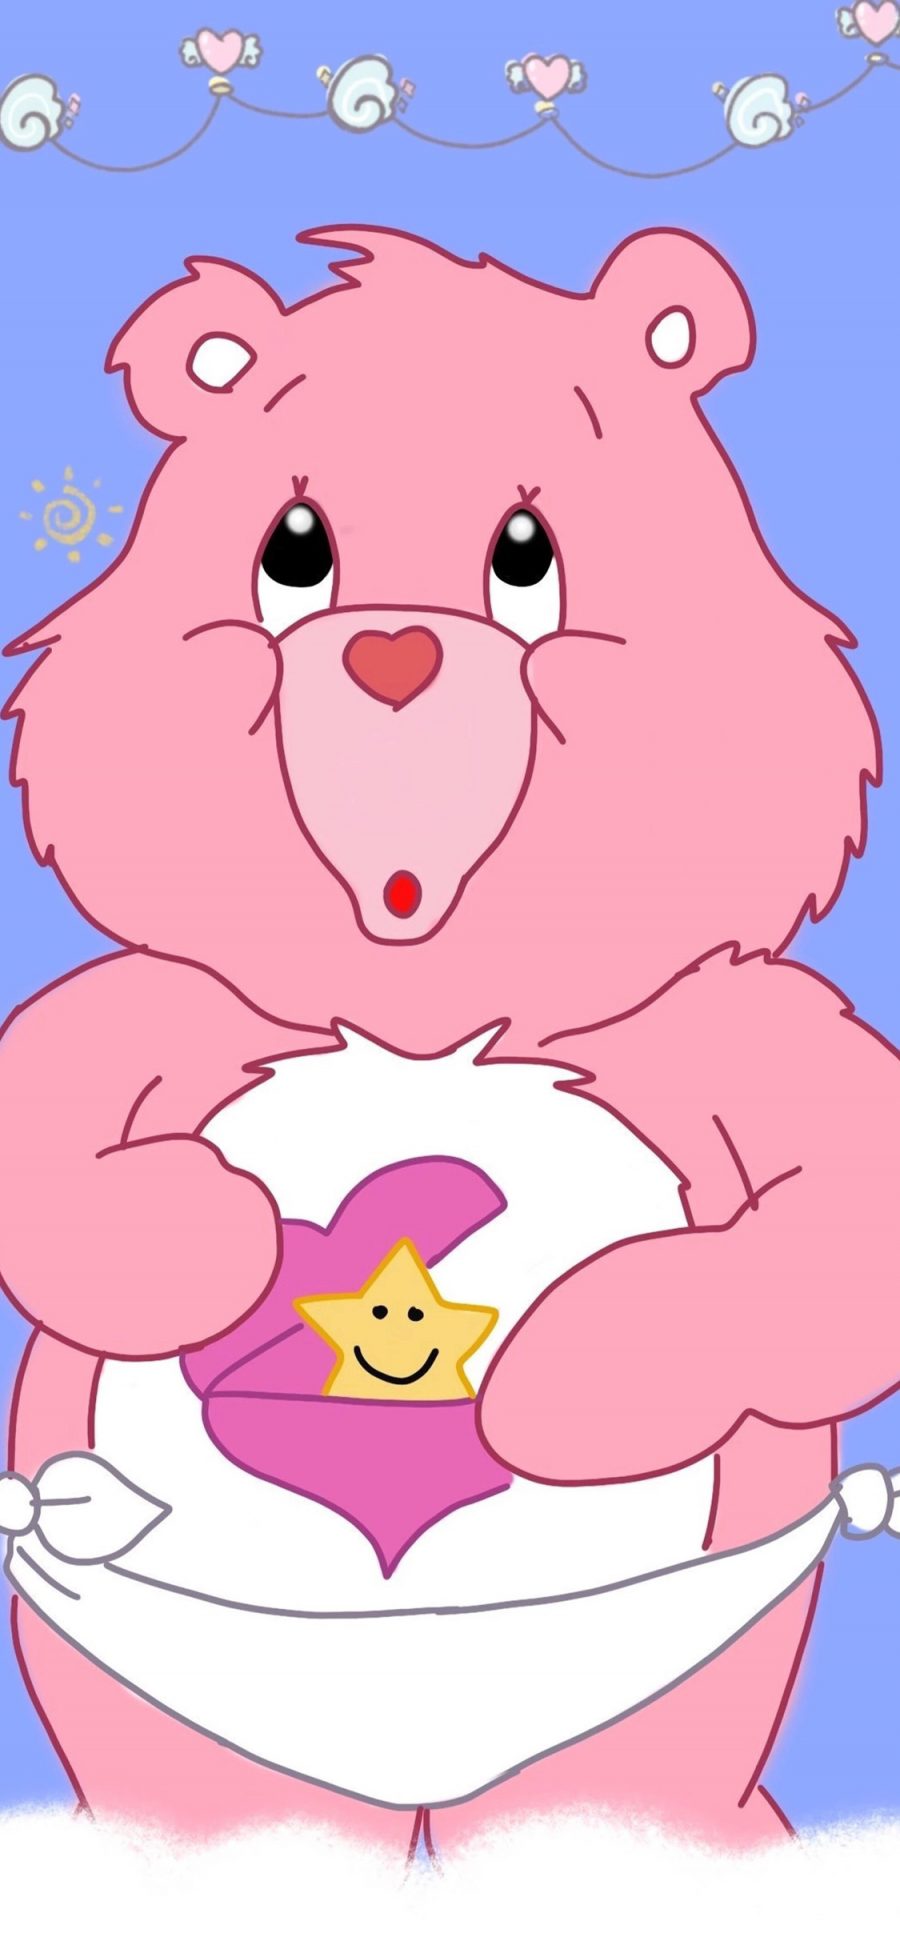 [2436×1125]卡通 小熊 爱心熊 彩虹熊 粉色 苹果手机动漫壁纸图片